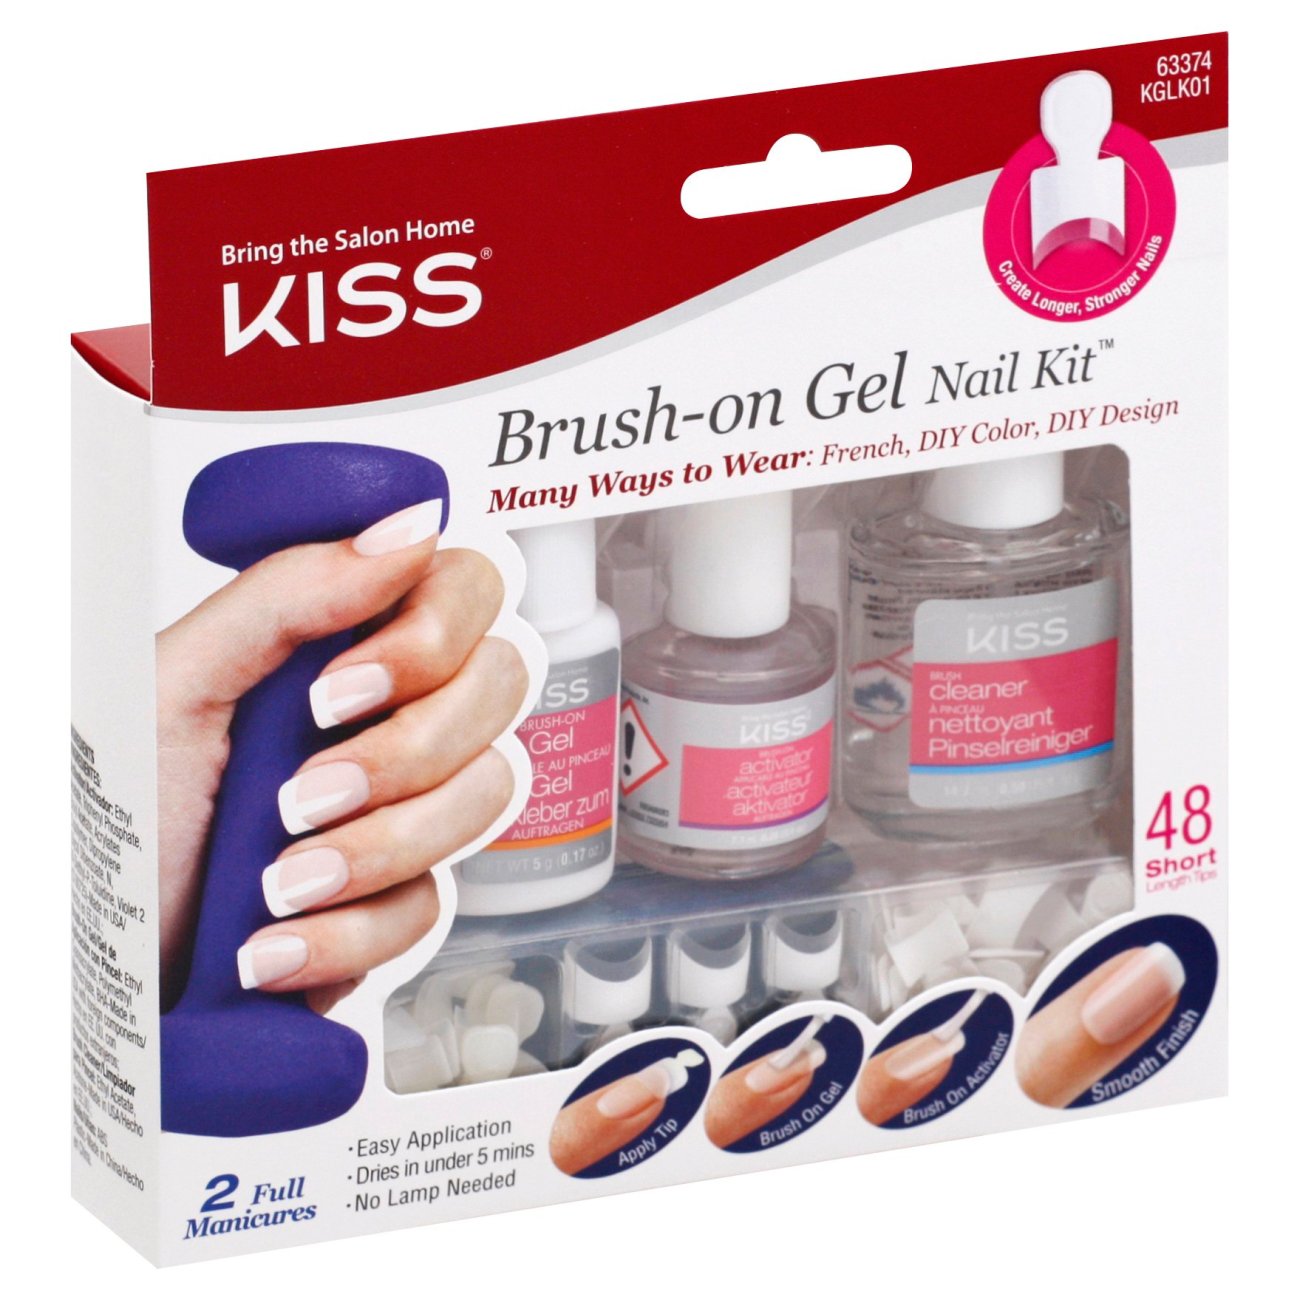 Kiss Brush-on Gel Nail Kit - Shop Nail Sets at H-E-B